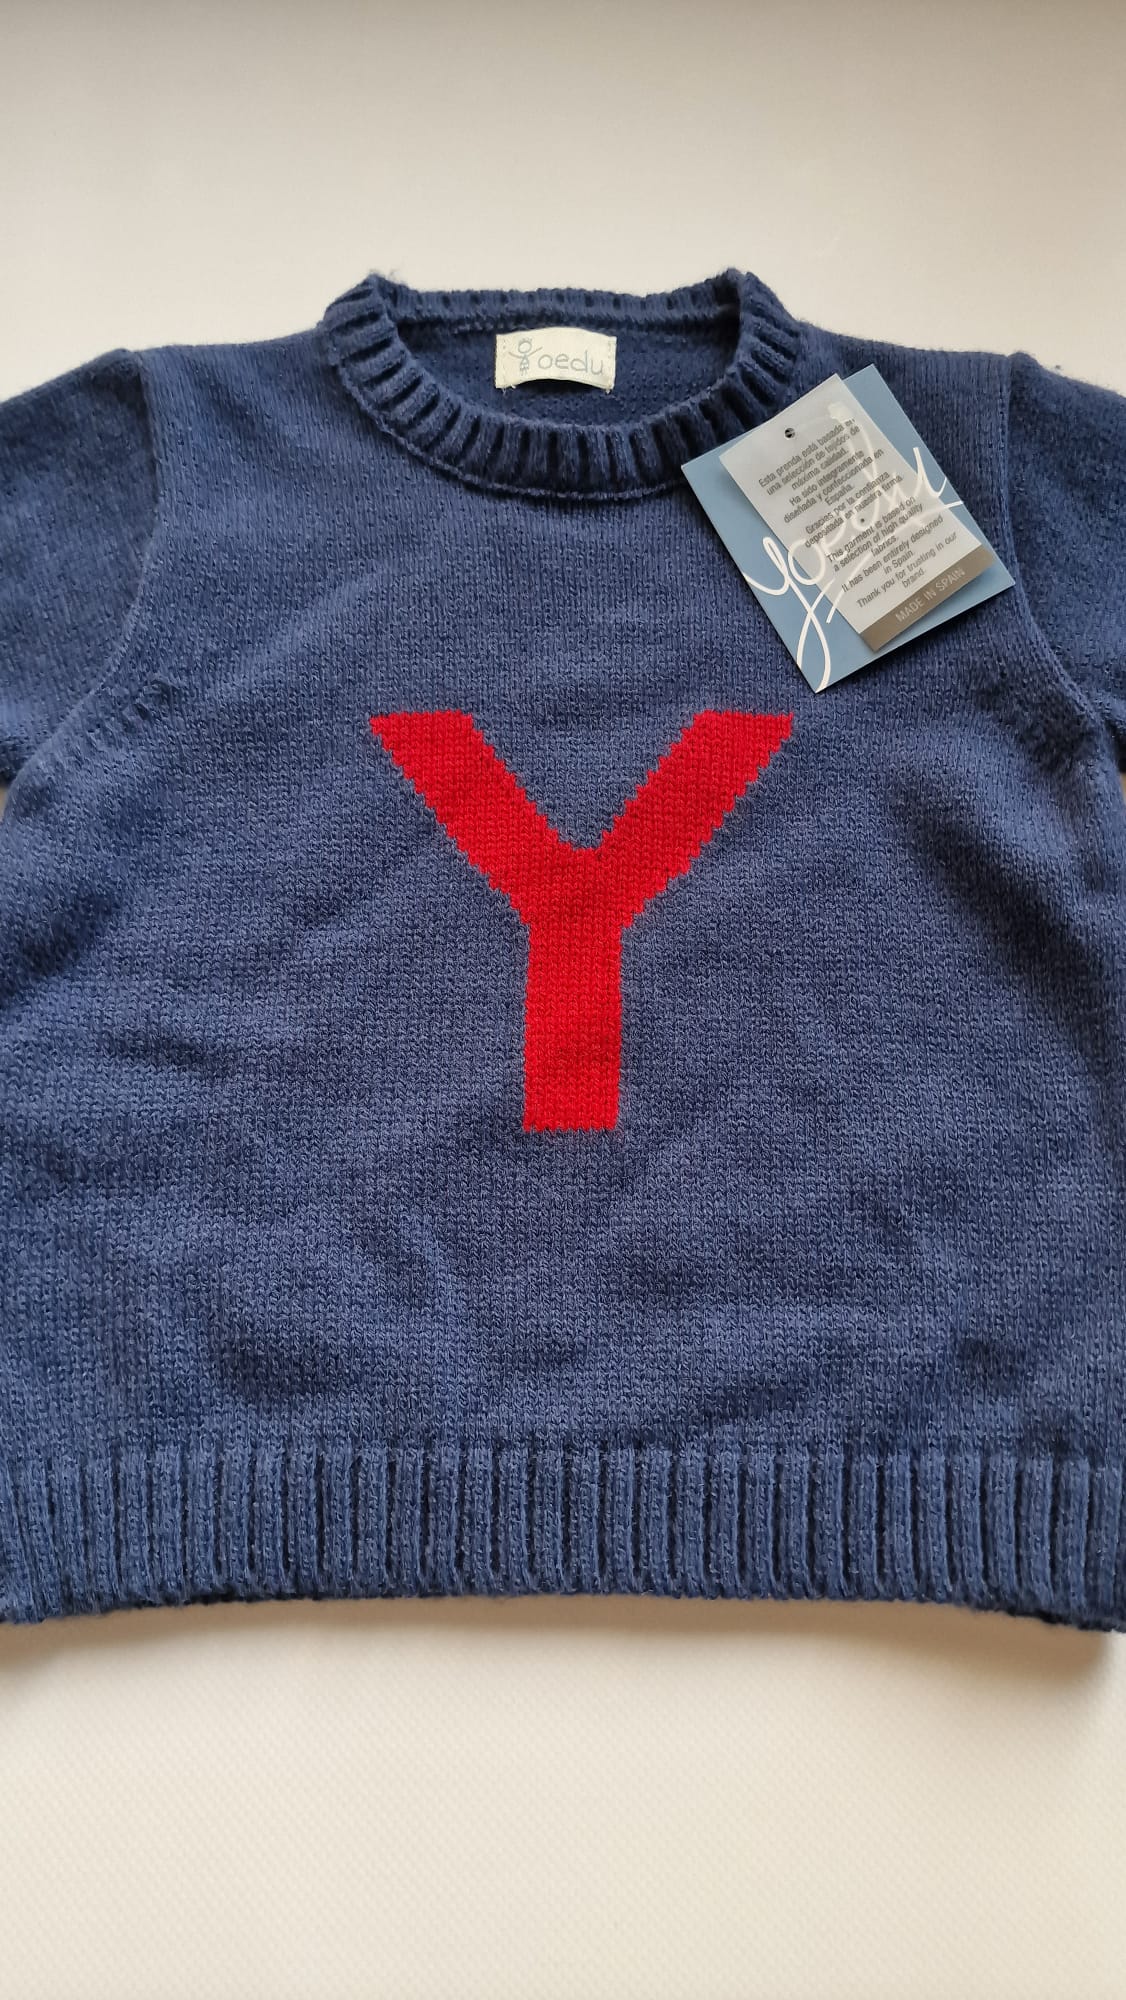 Jersey infantil "Y"